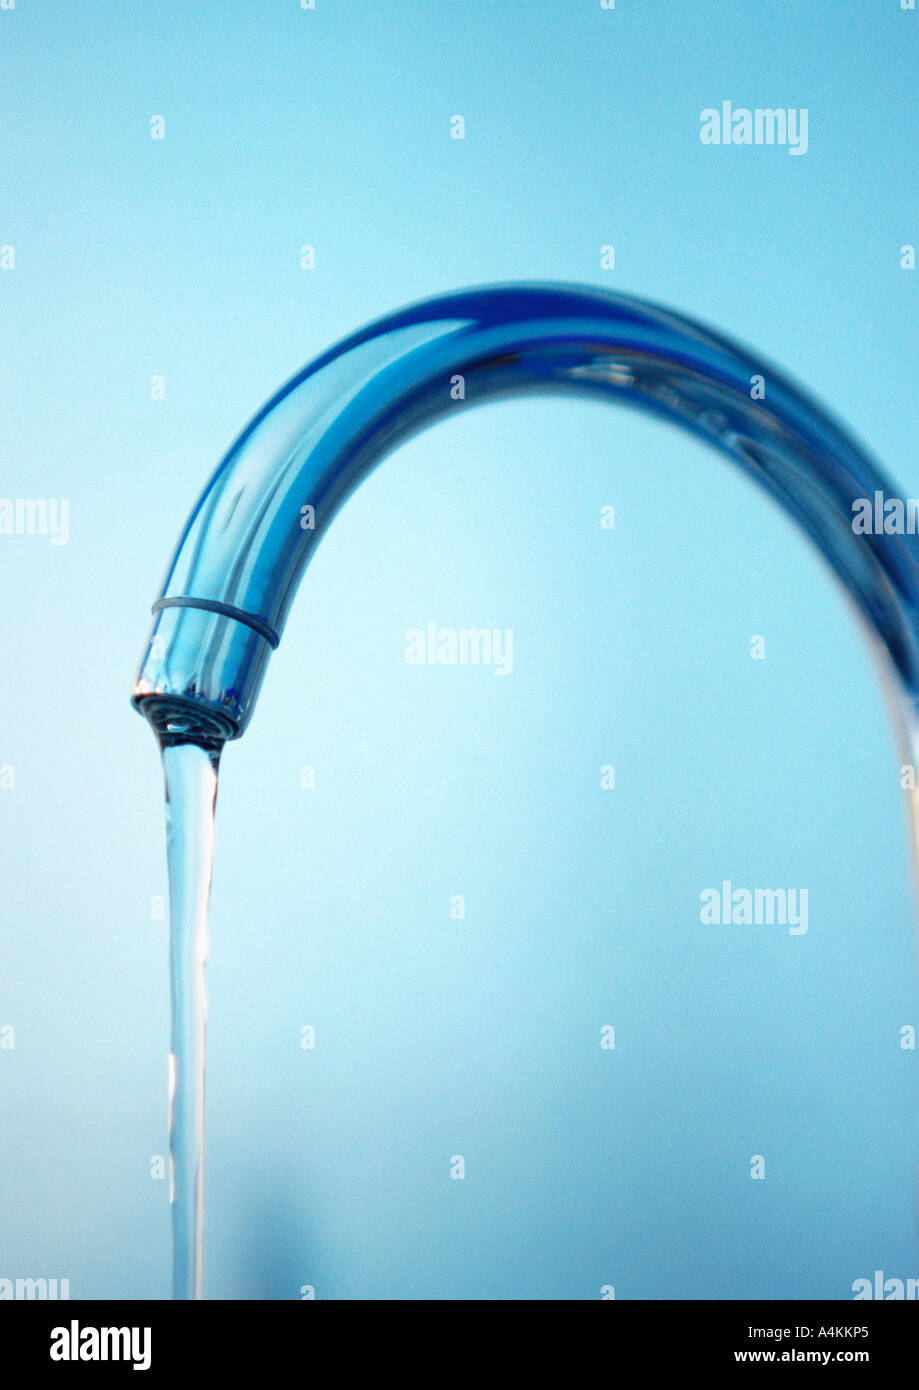 Wasserhahn mit fließendem Wasser, Nahaufnahme Stockfotografie - Alamy